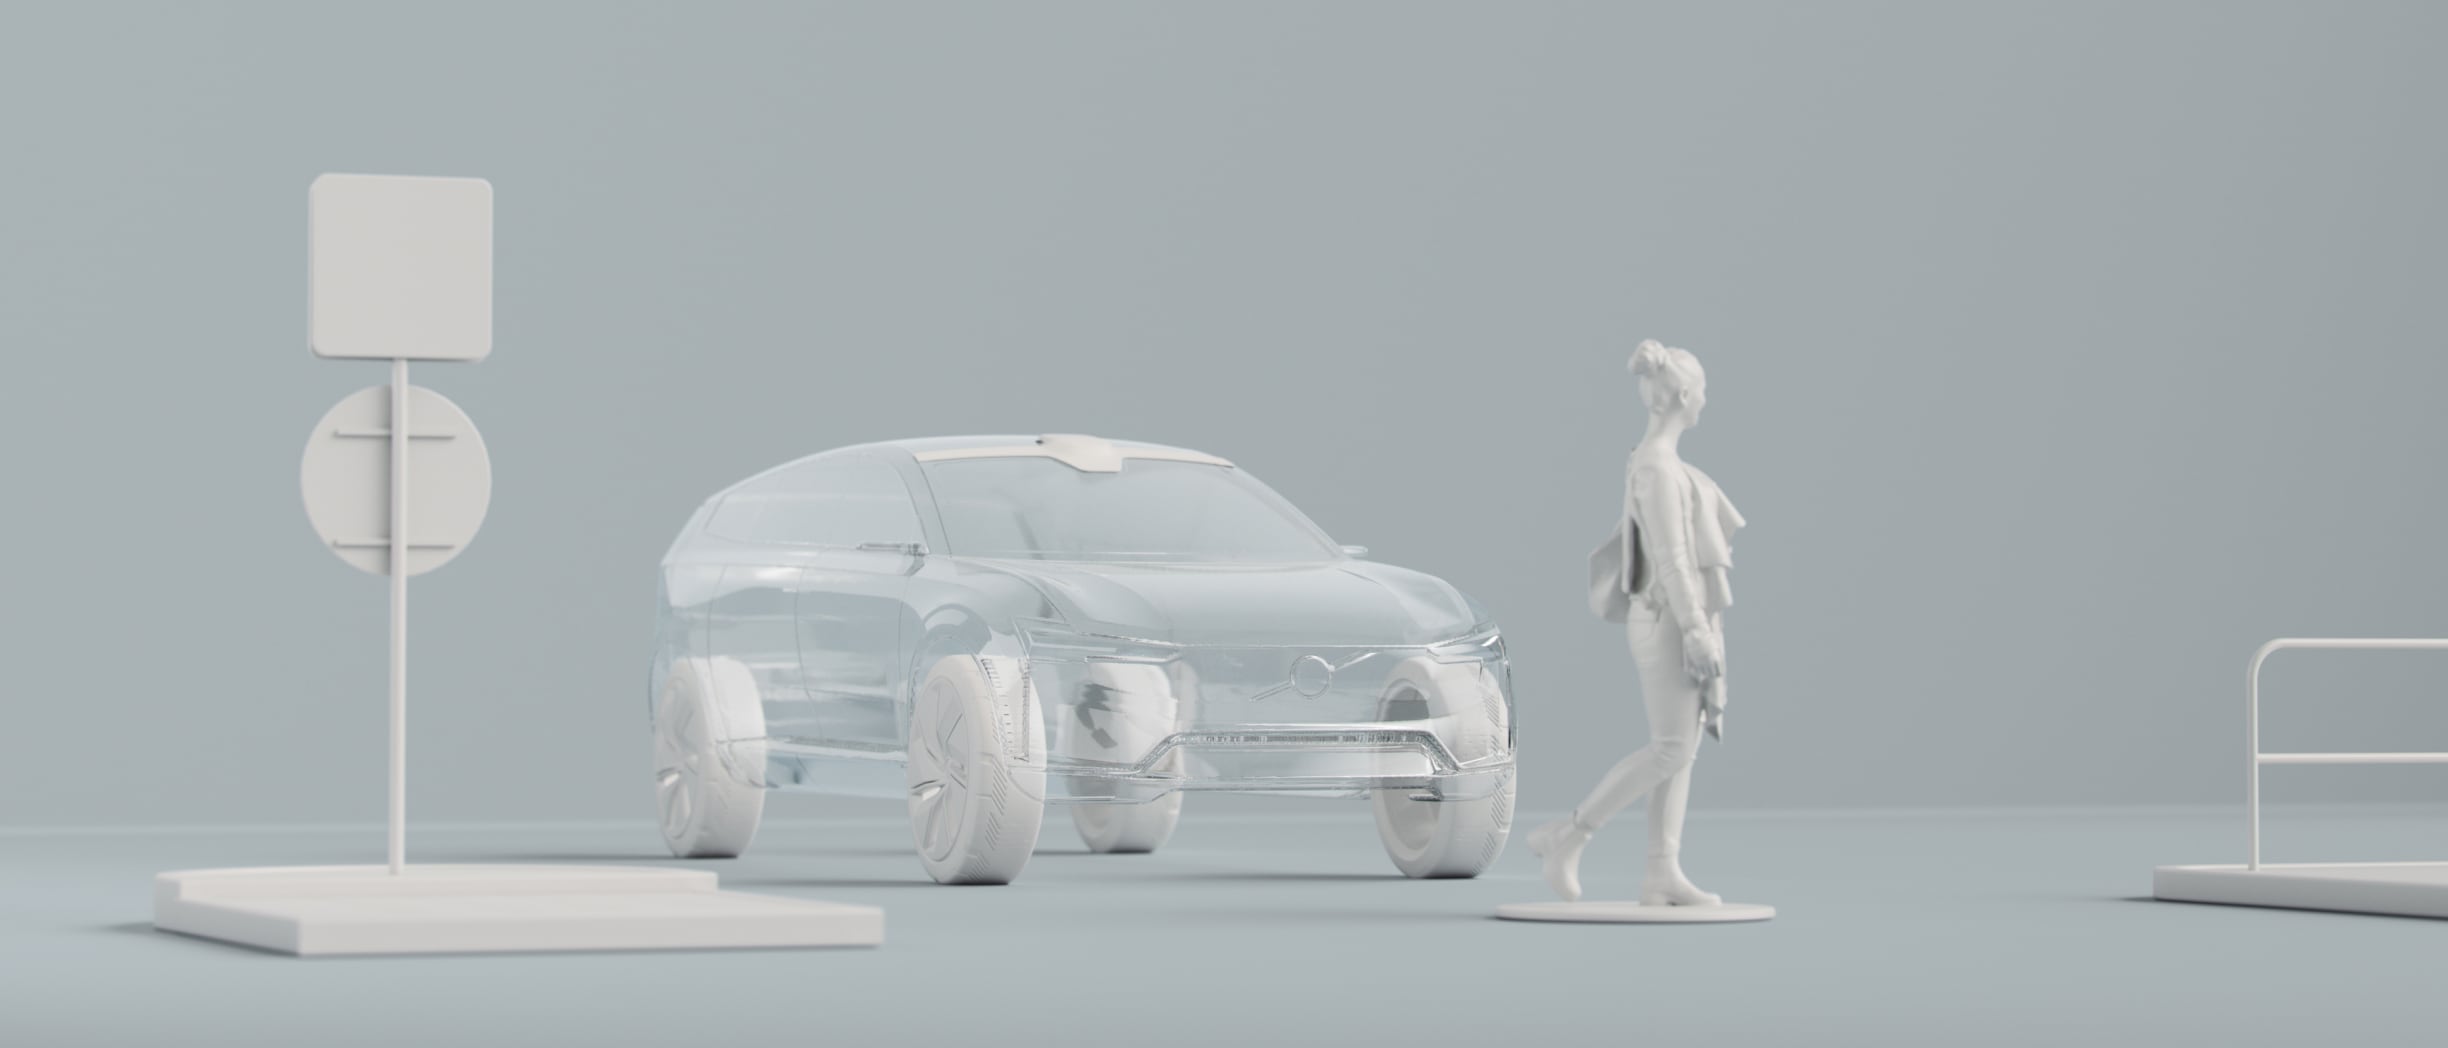 Digitalni prikaz obrisa automobila, jedne osobe i drugih predmeta.